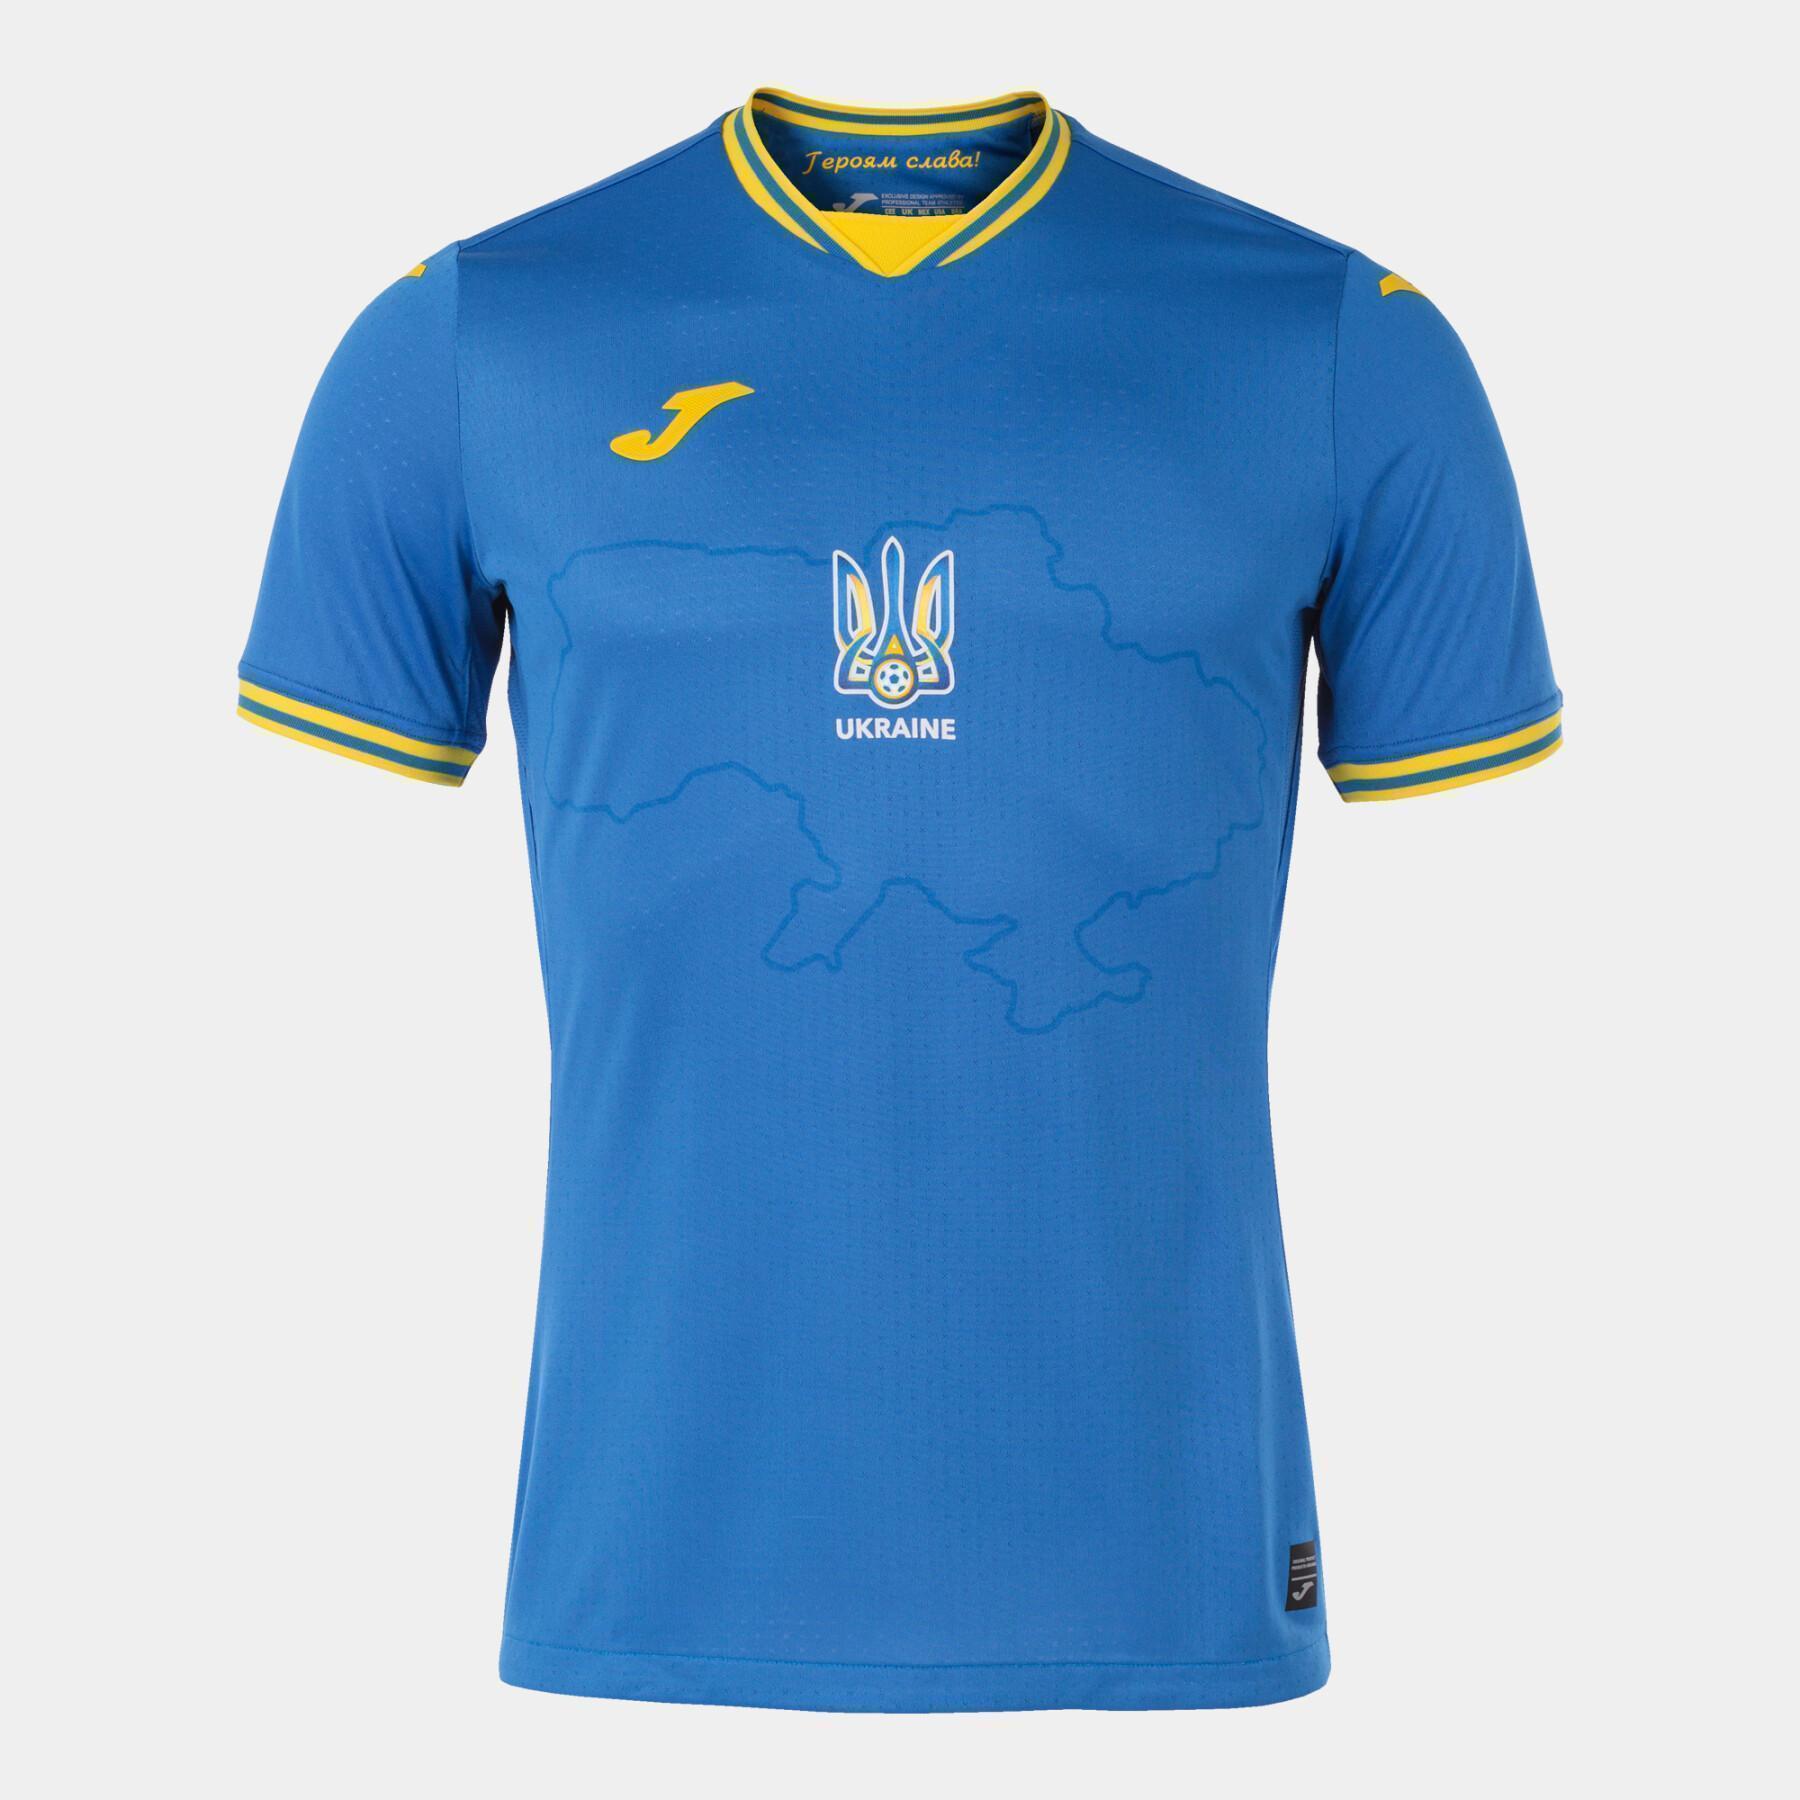 Outdoor jersey Ukraine 2021/22